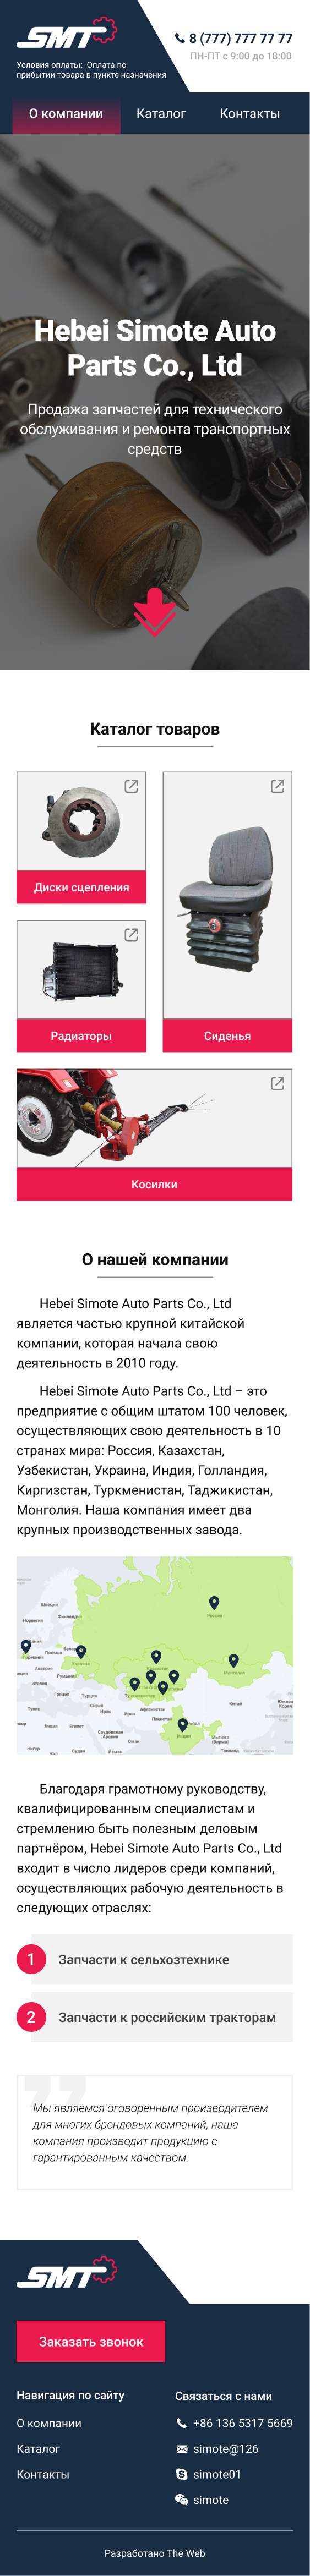 Дизайн сайта Simote для мобильных устройств